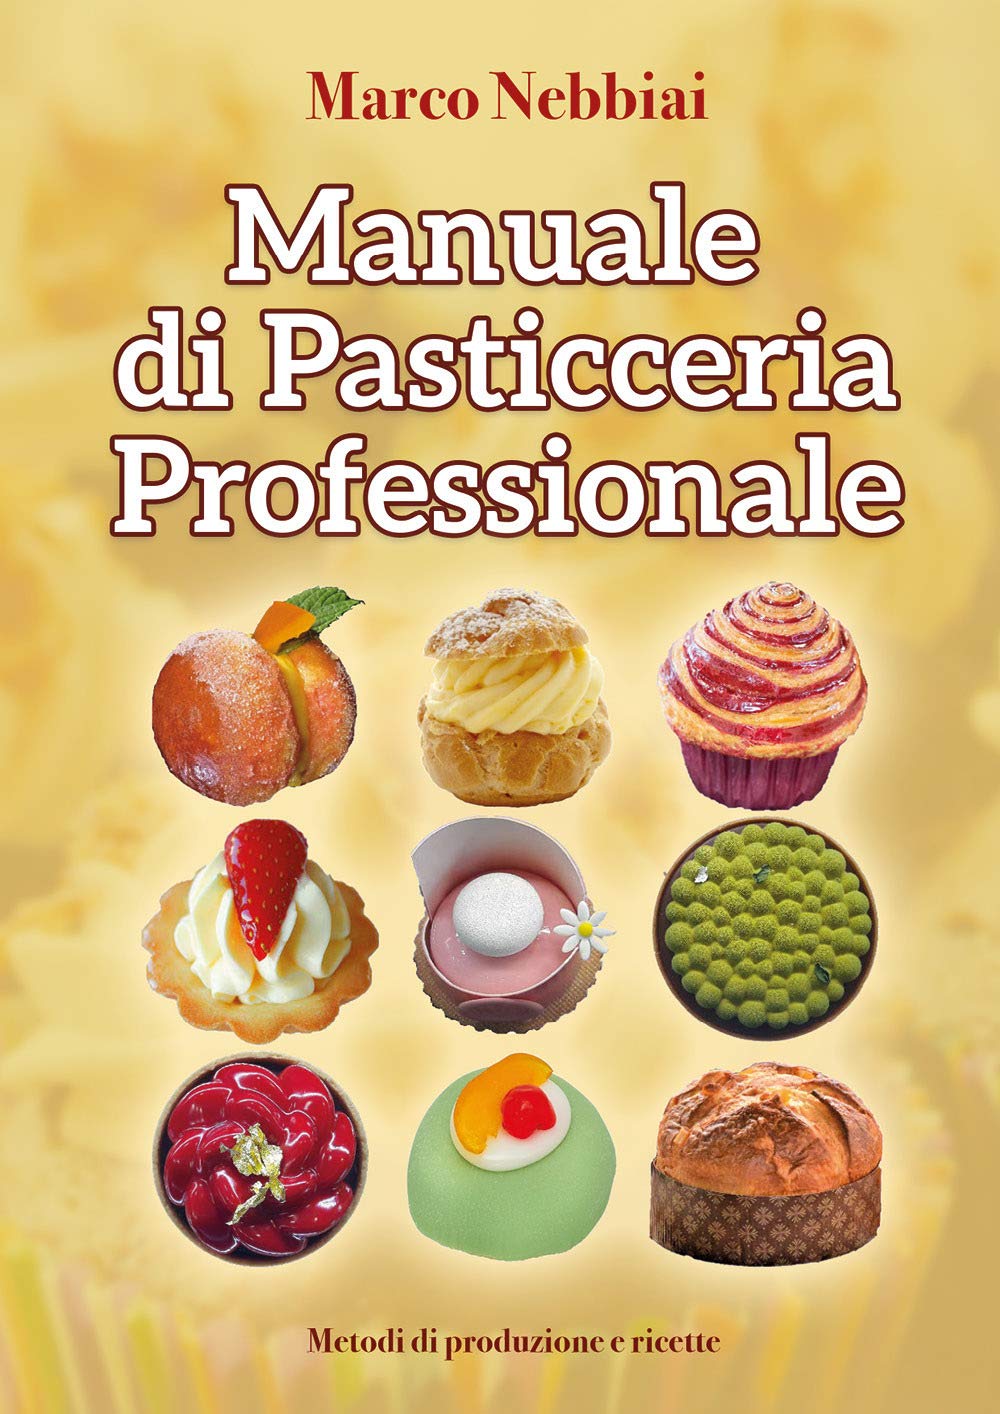 Manuale di Pasticceria Professionale (Marco Nebbiai)